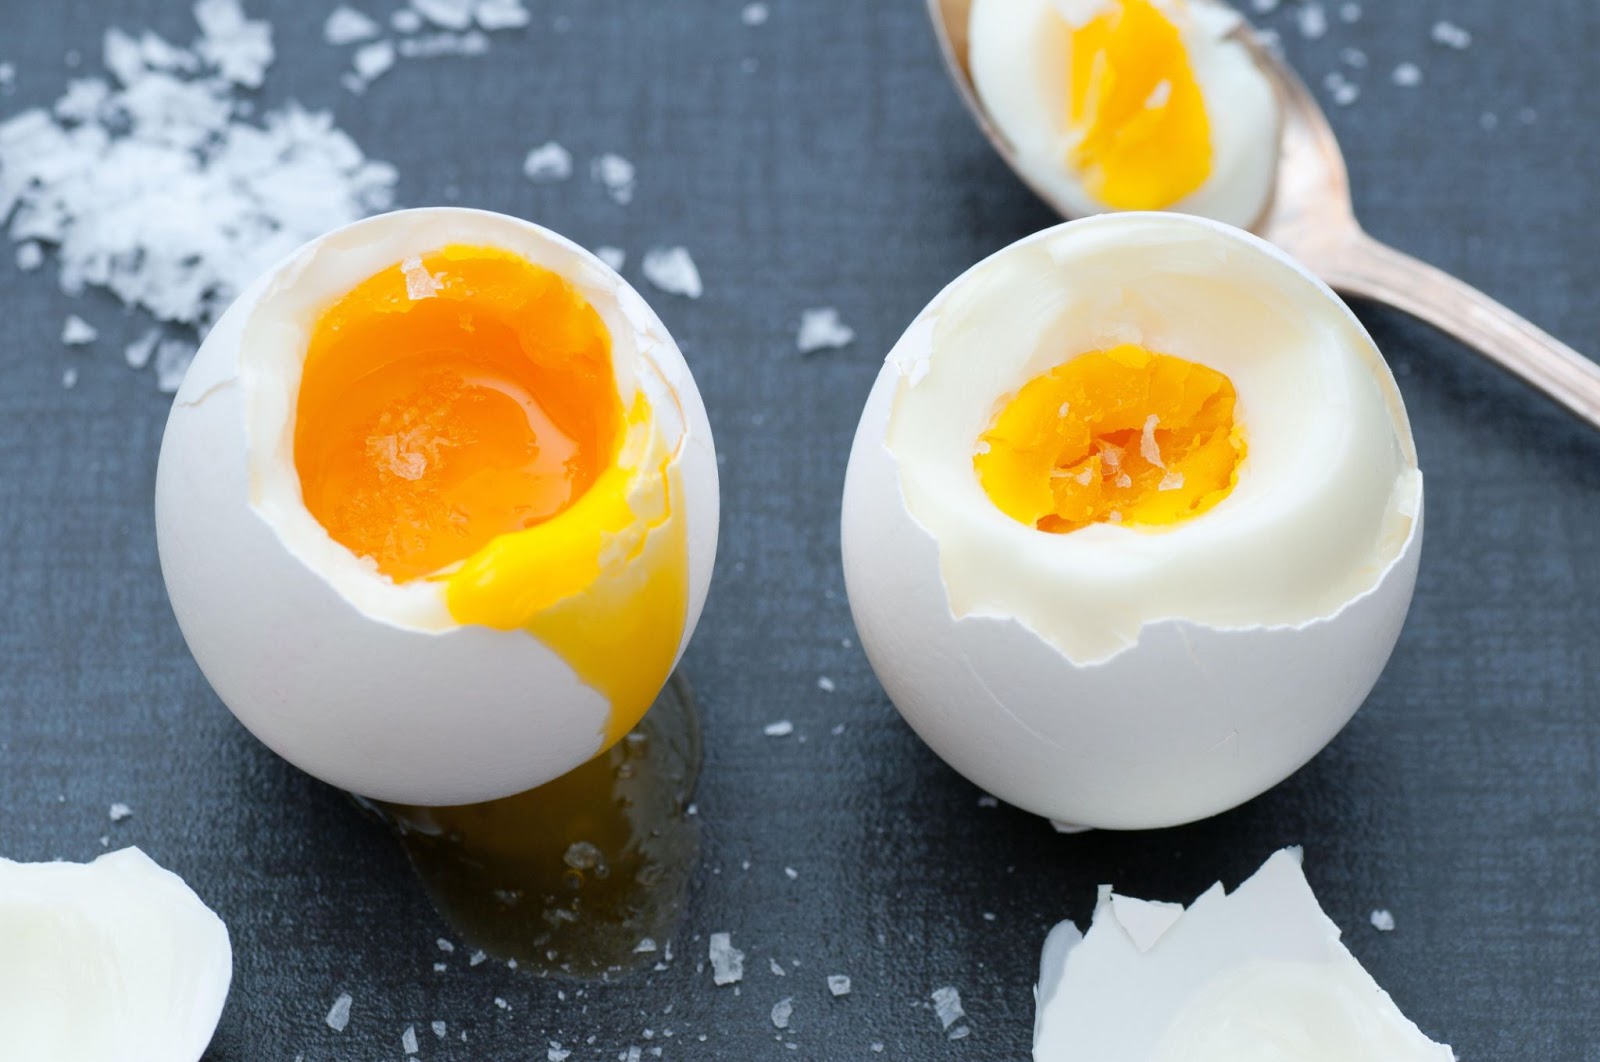 Một ngày ăn 3 quả trứng, người đàn ông bỗng bị nhồi máu cơ tim cấp, nhóm người nào nên hạn chế ăn trứng? - Ảnh 2.